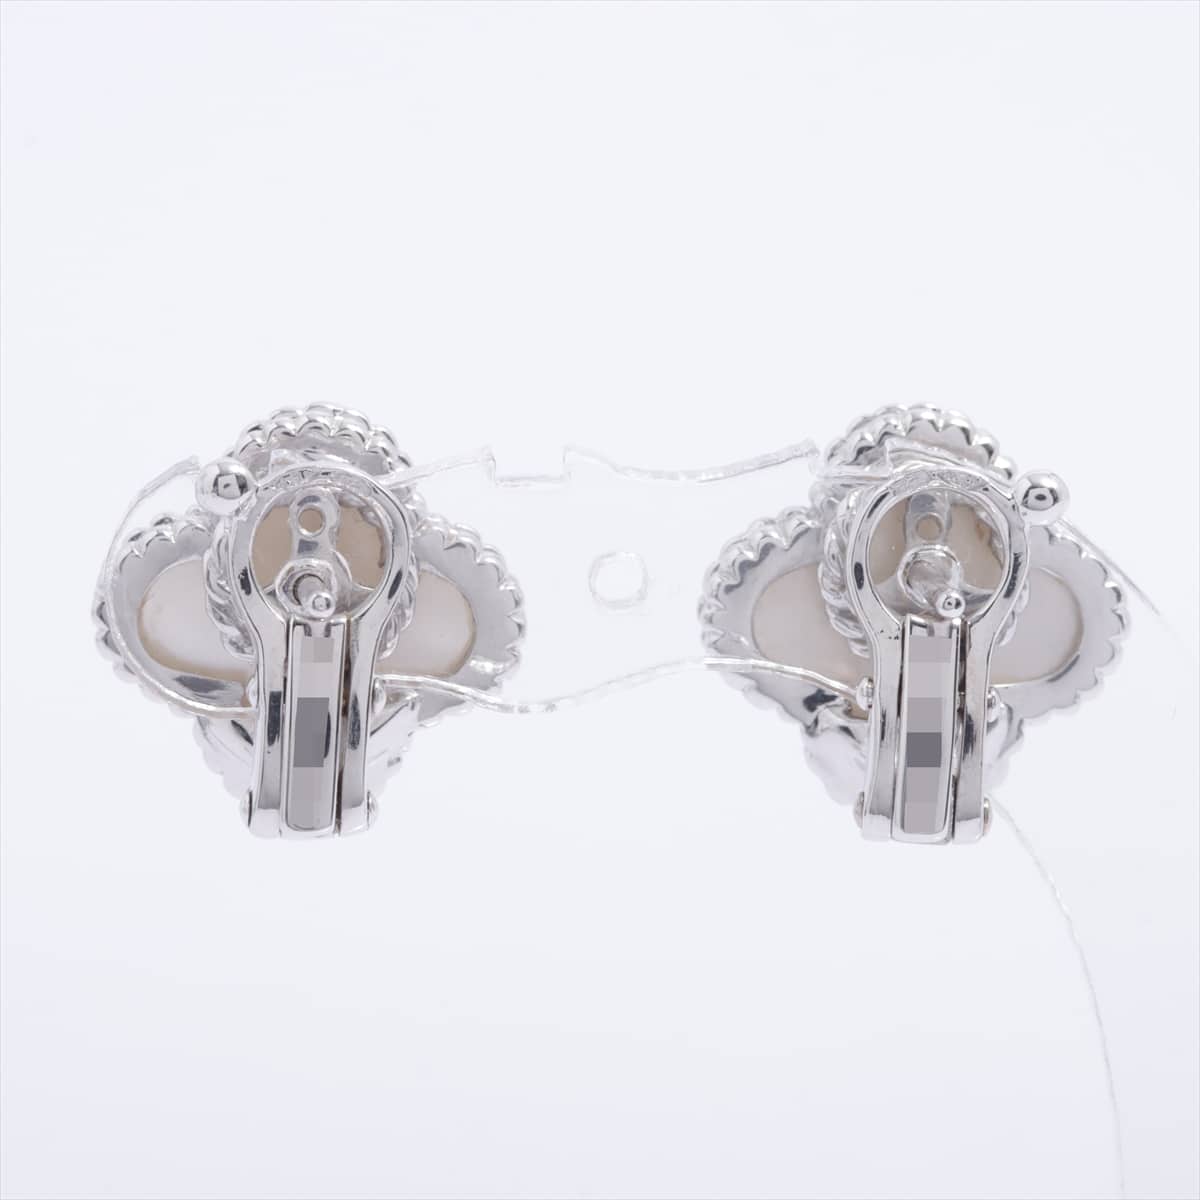 Van Cleef & Arpels Vintage Alhambra shells Piercing jewelry 750 WG 7.9g